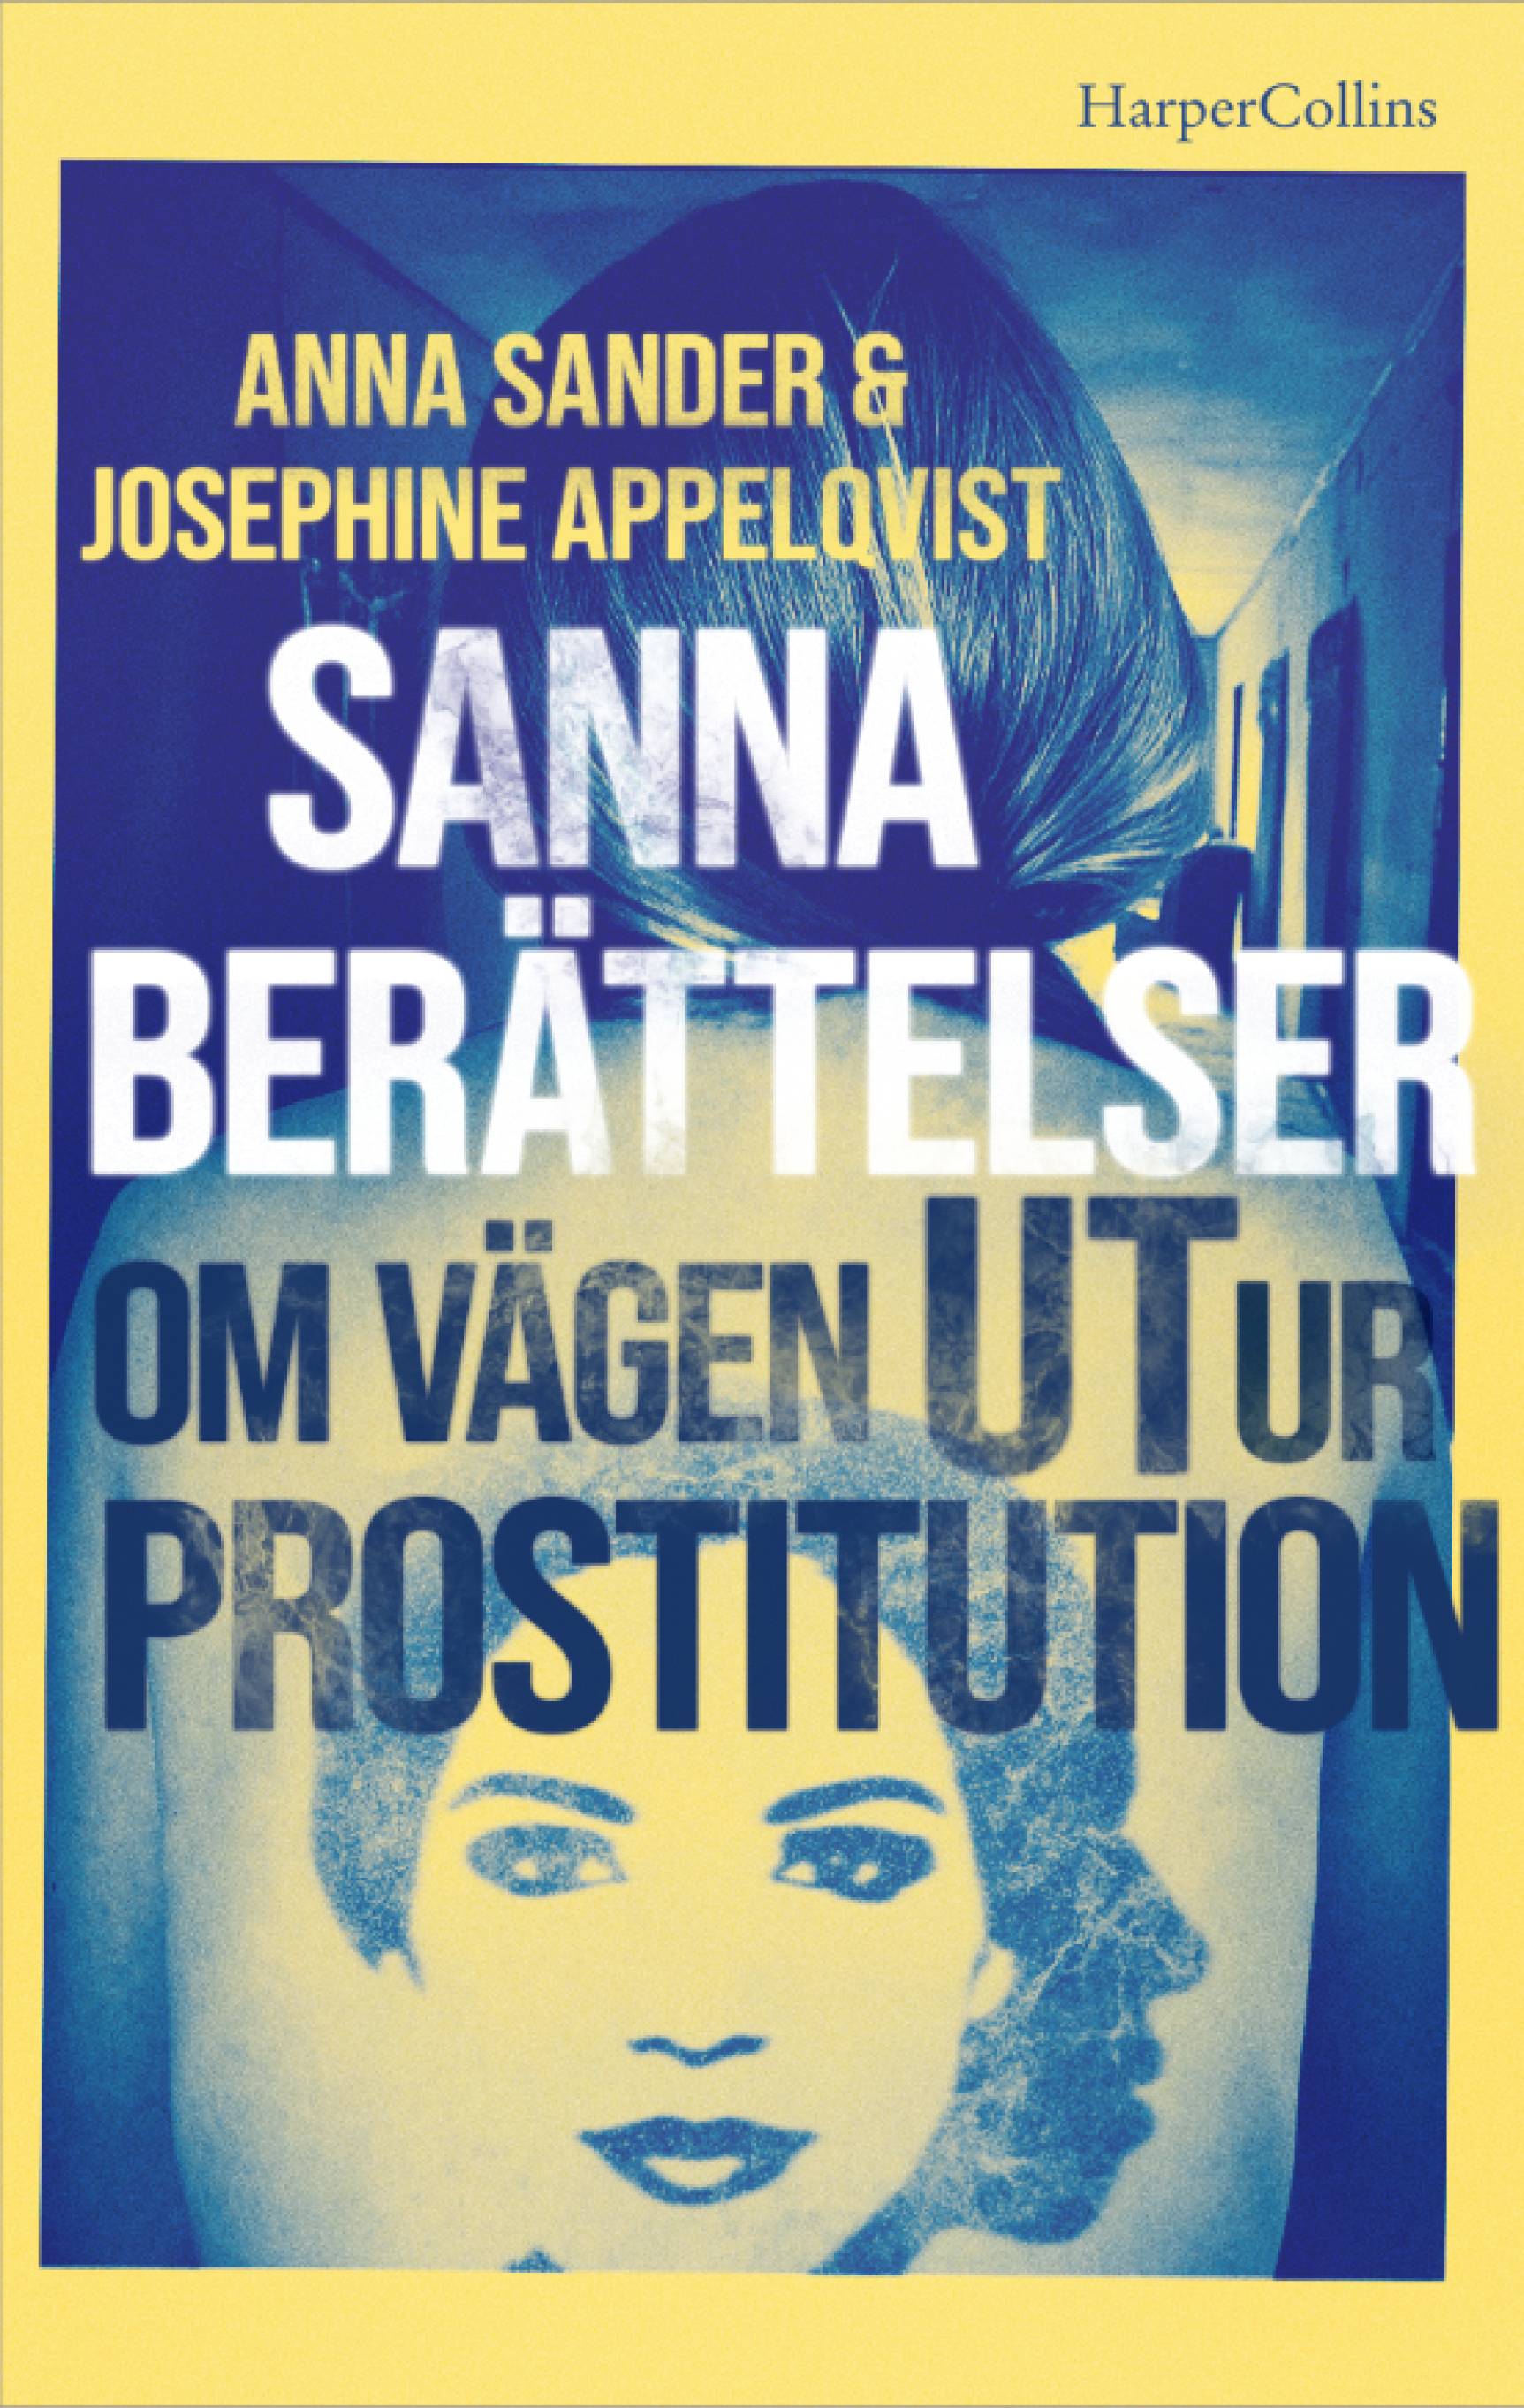 Sanna berättelser om vägen ut ur prostitution